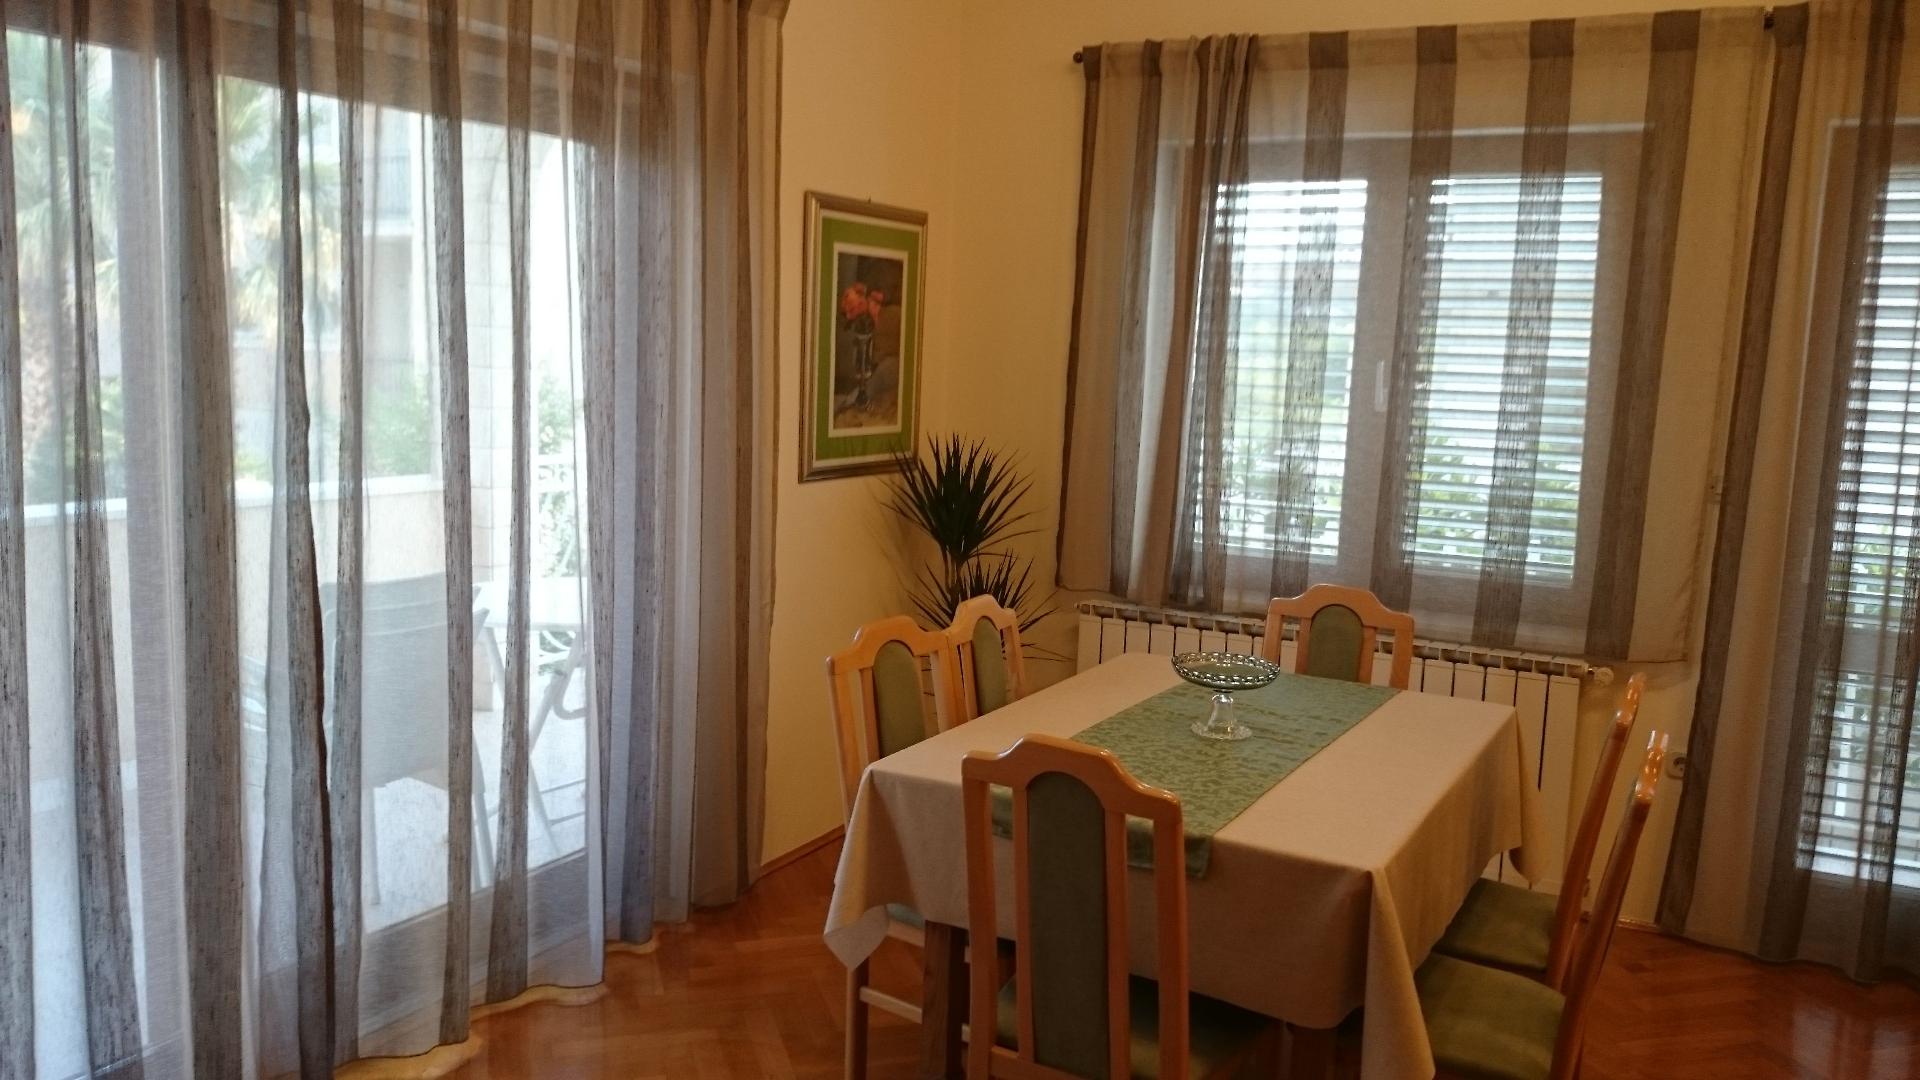 Ferienwohnung für 6 Personen ca. 65 m² i Ferienwohnung in Kroatien